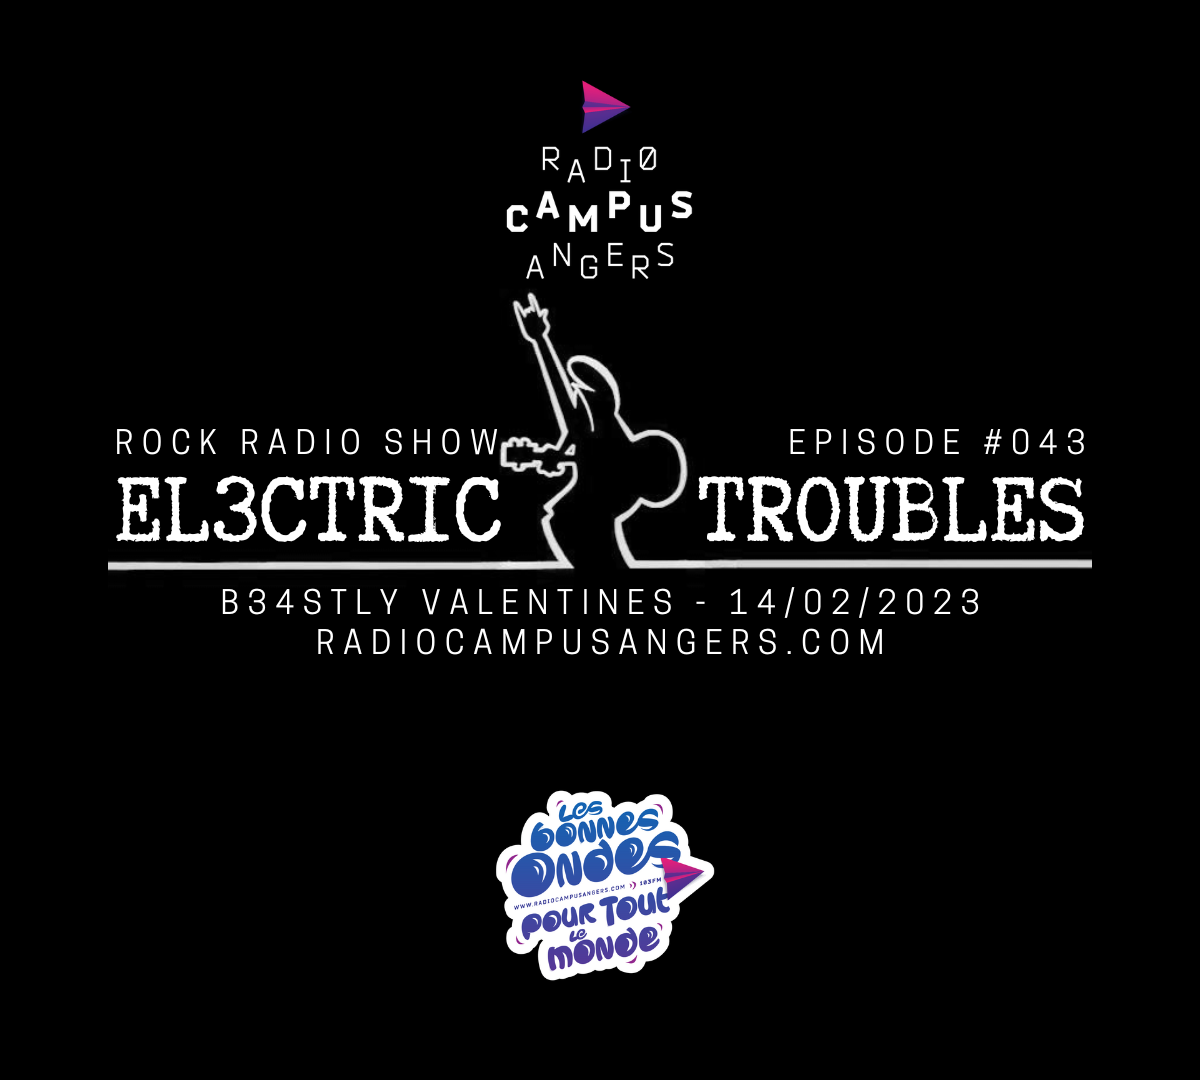 El3ctric Troubles RCA Episode 043